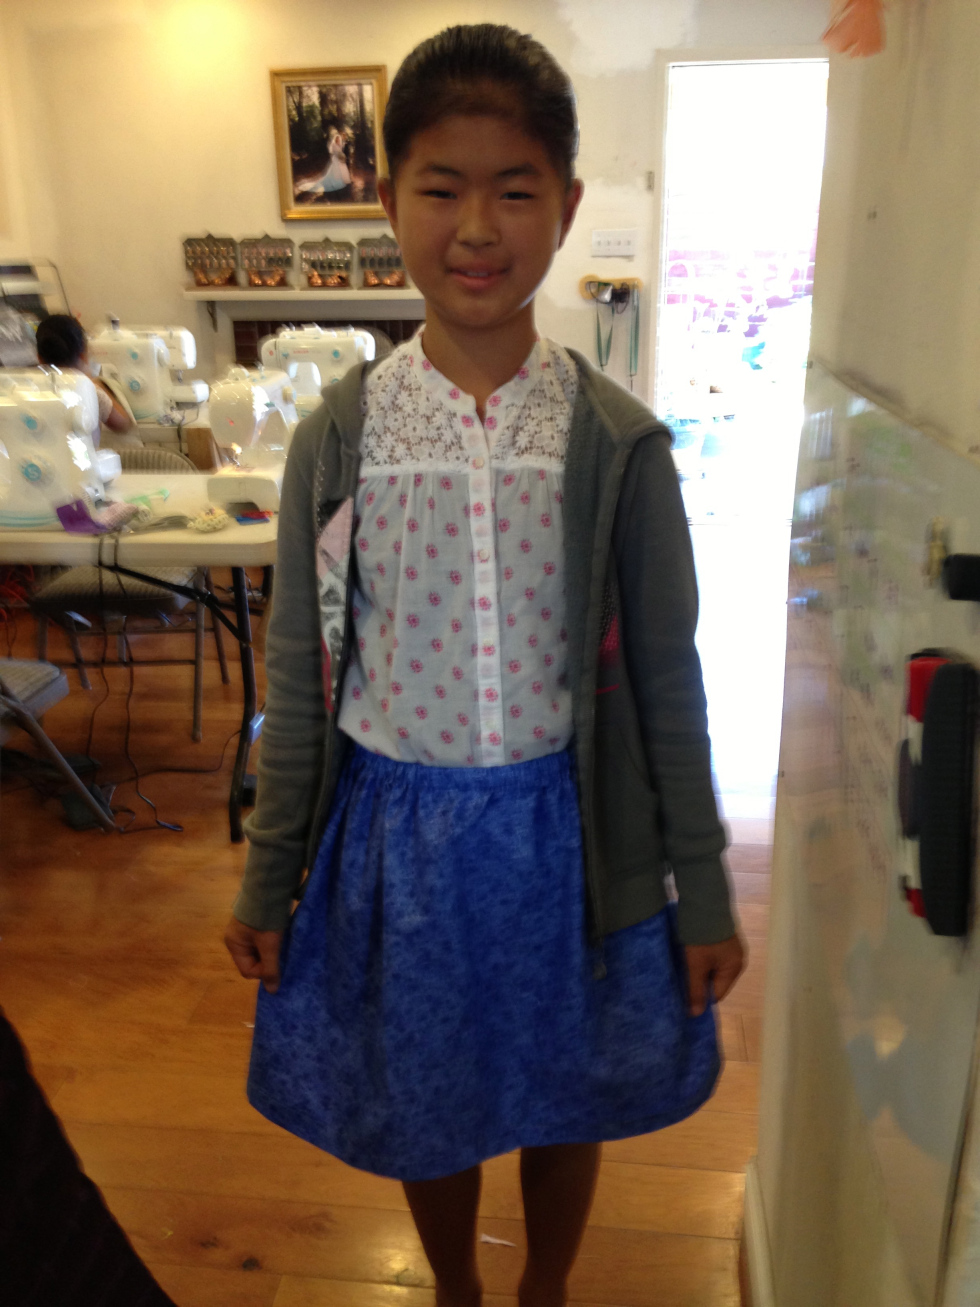  6th grade skirt. 